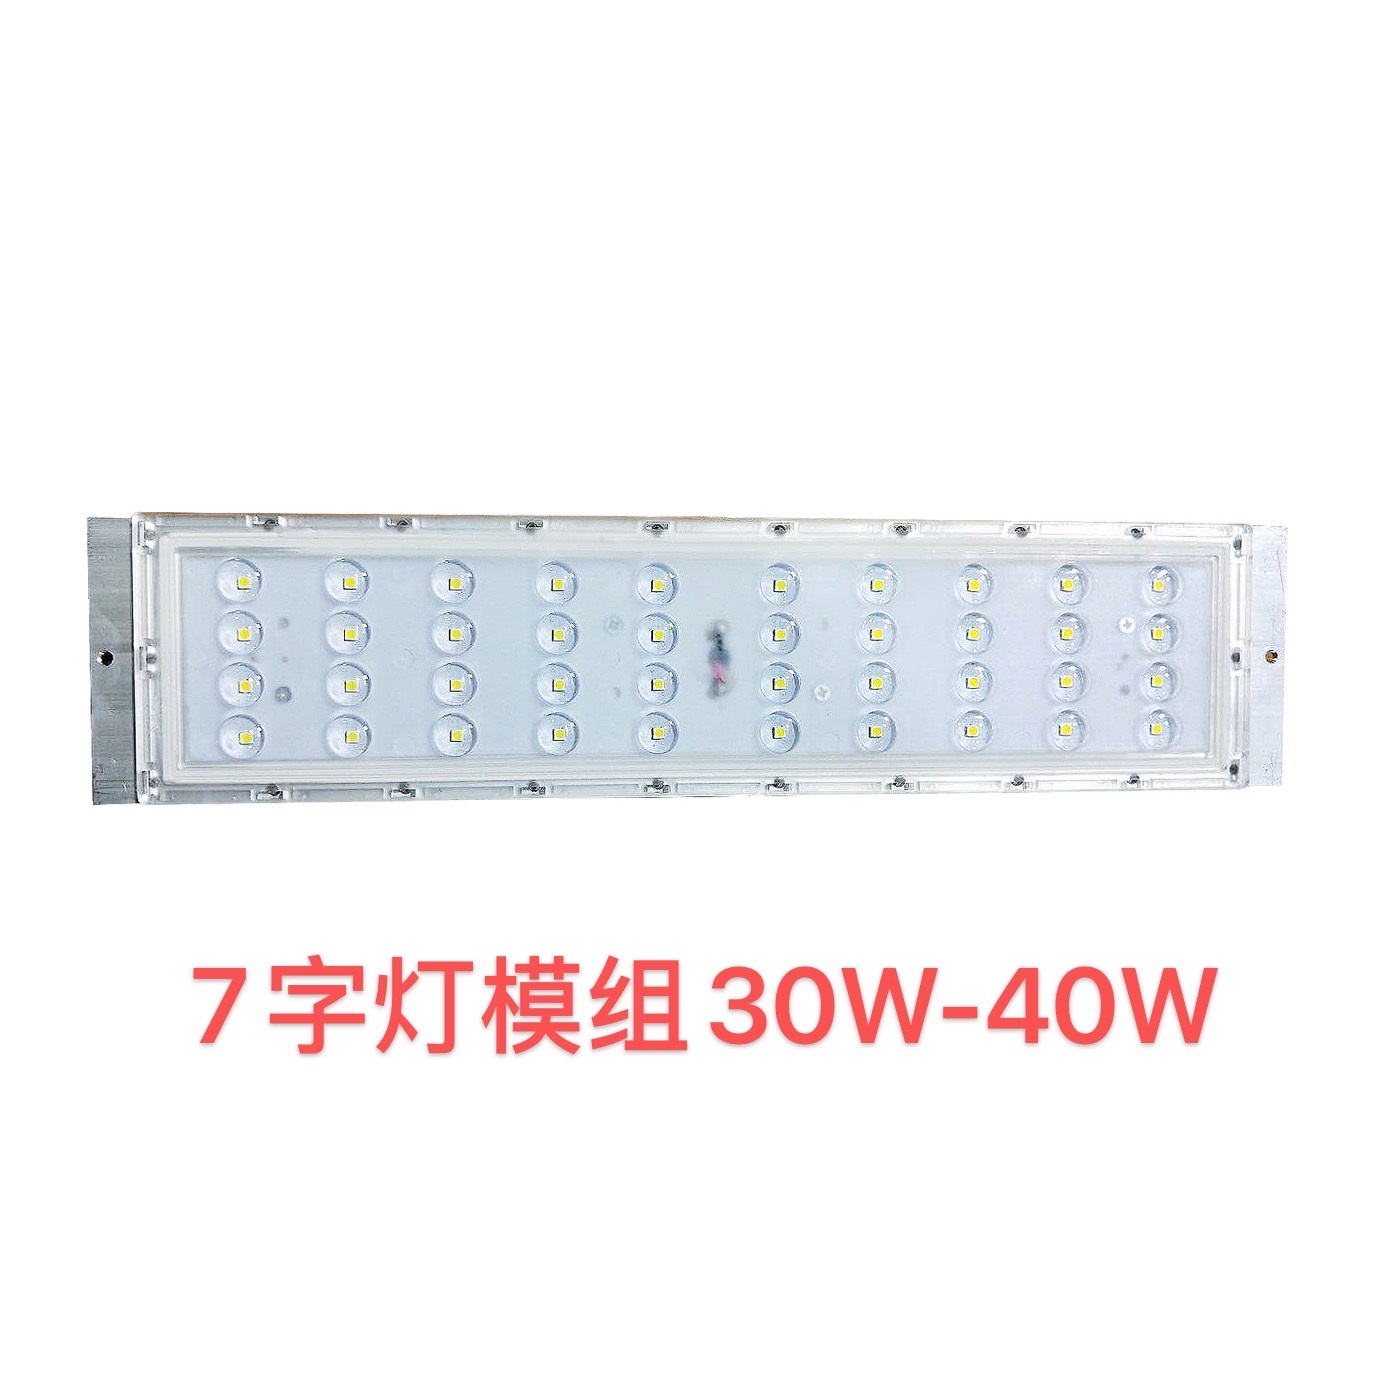 7 word lamp module 30W-40W